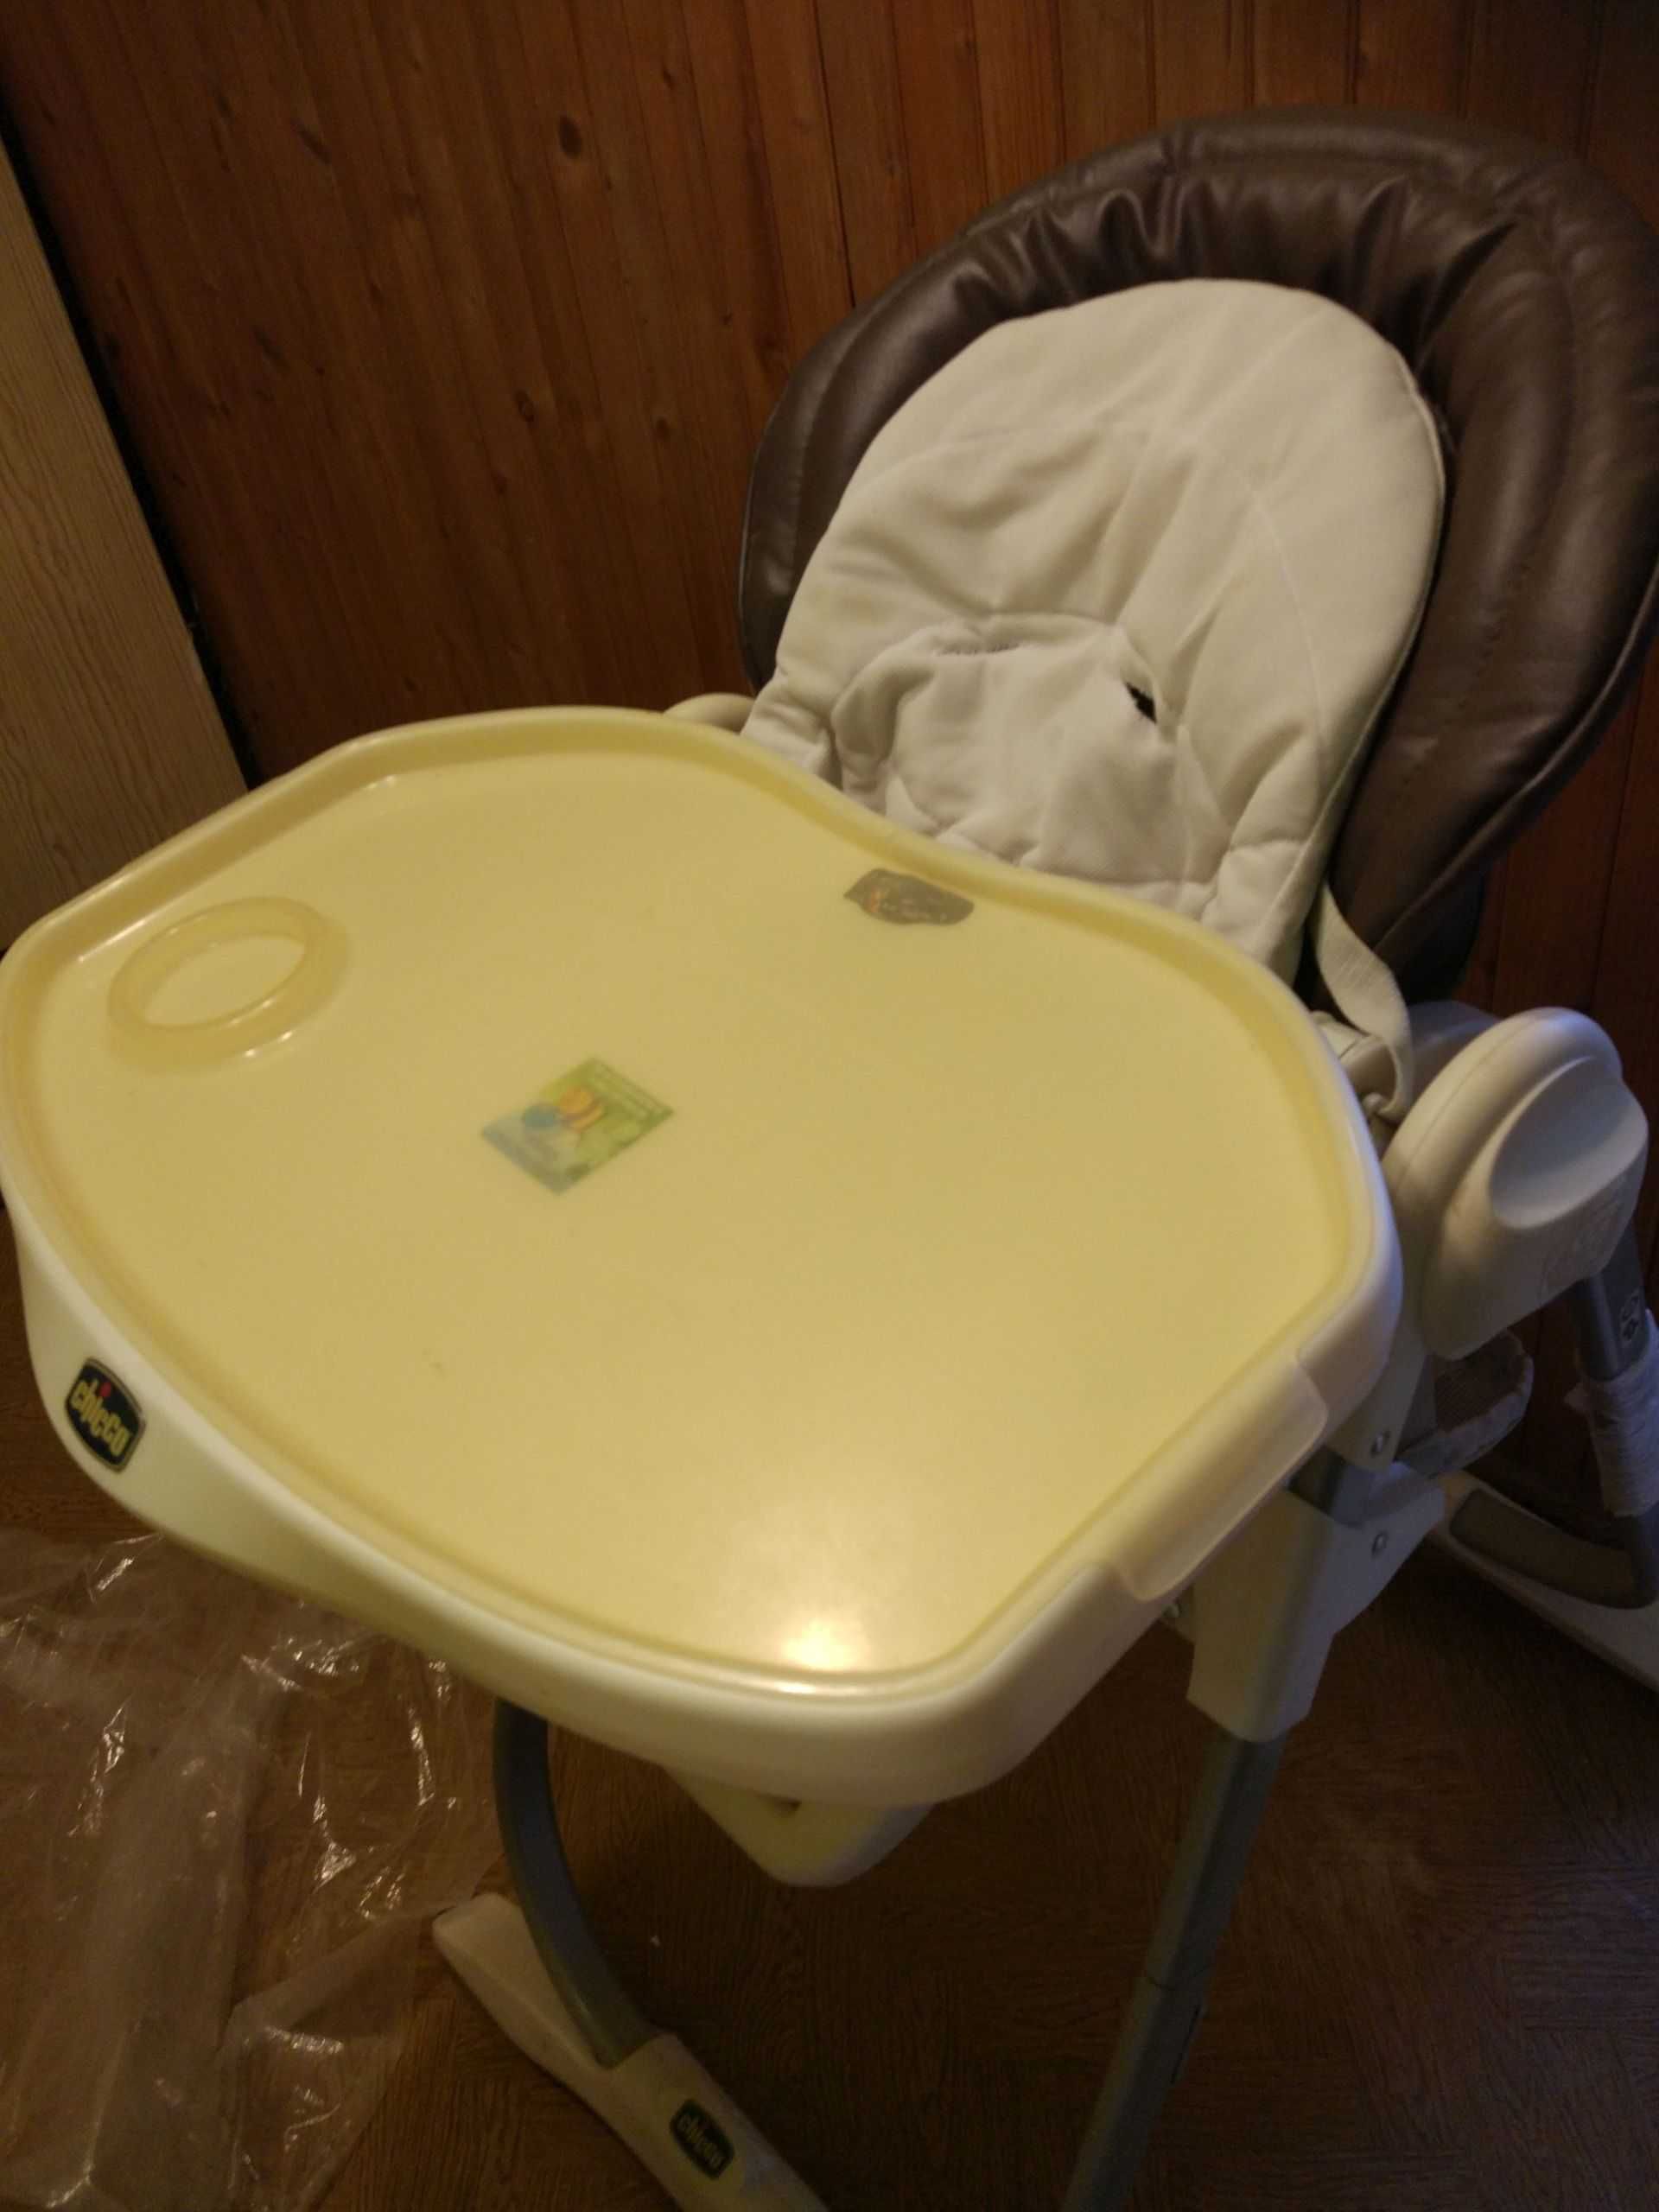 krzesło do karmienia dziecka - dwa w jednym